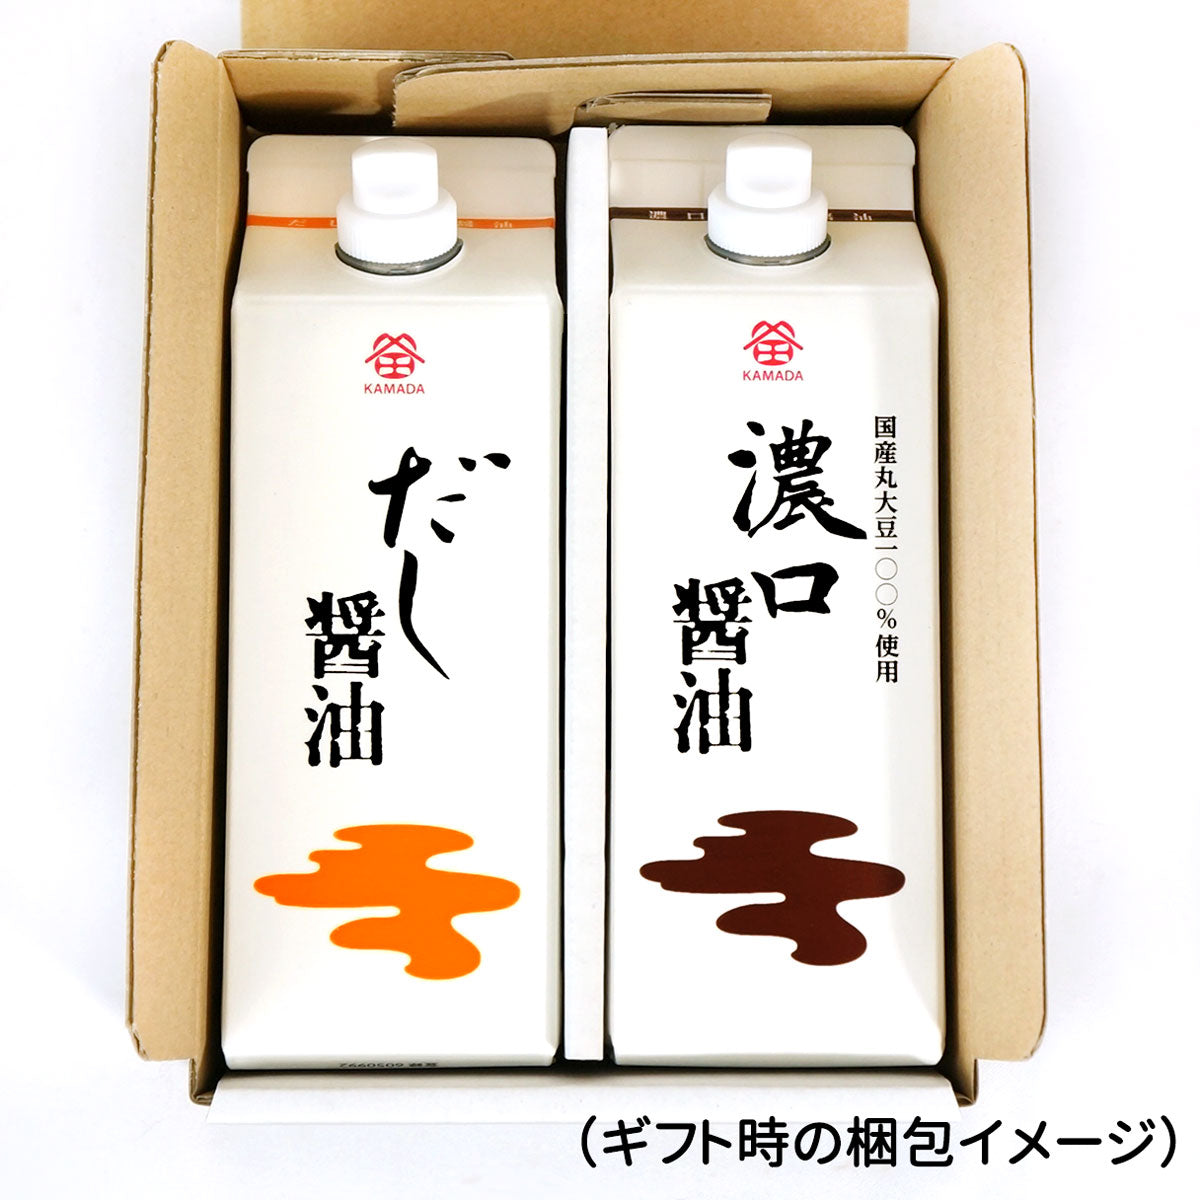 鎌田醤油 500ml 2本セット (だし醤油・濃口醤油)